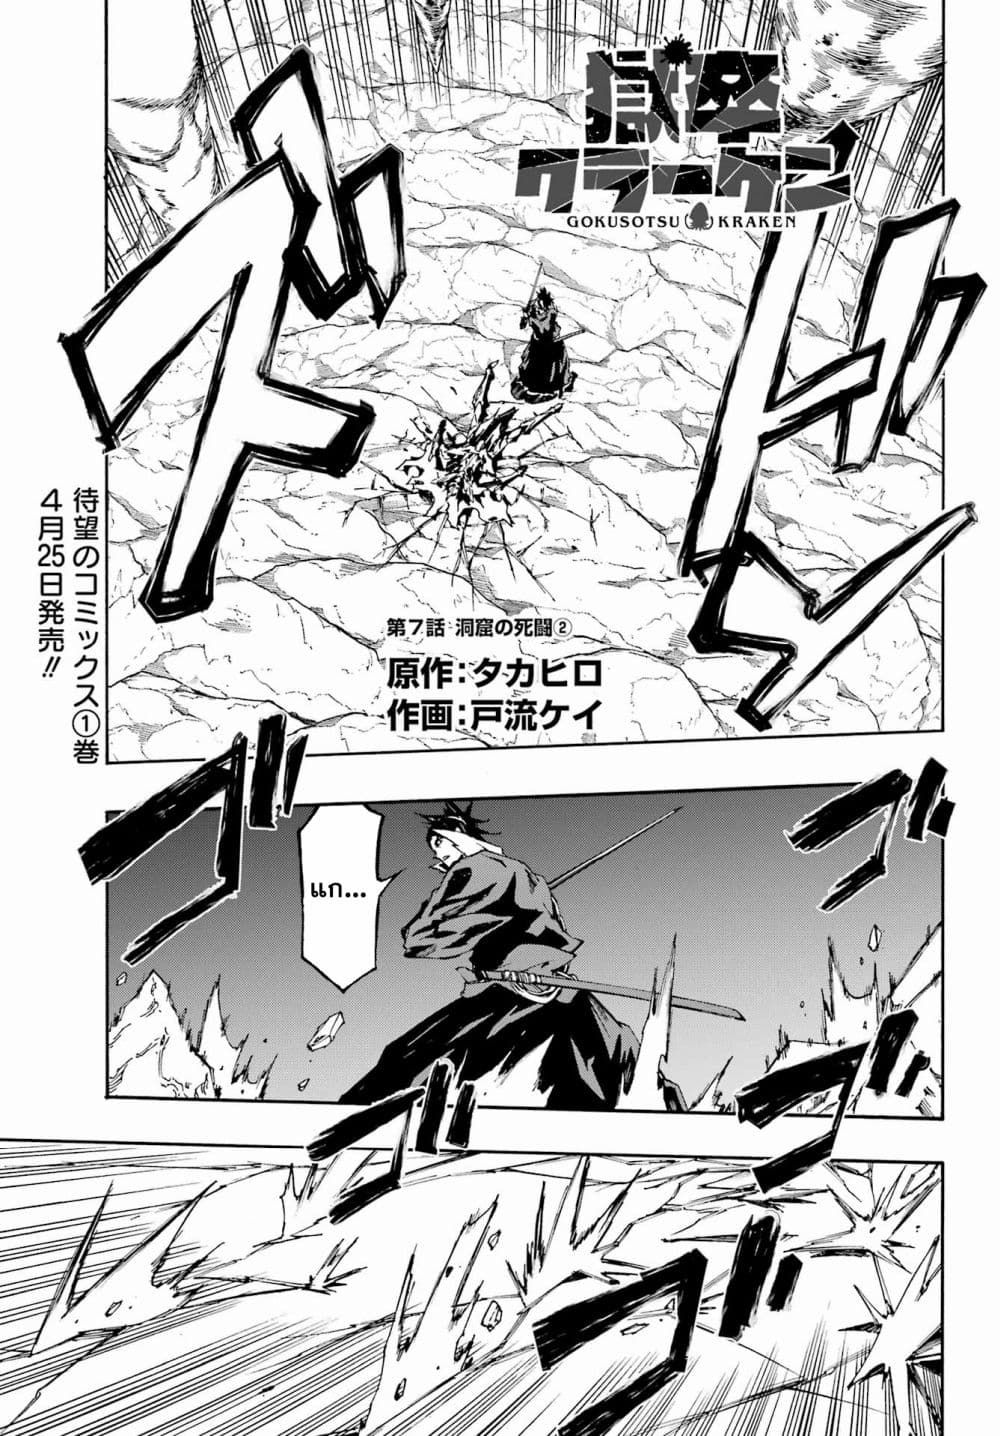 อ่านการ์ตูน Gokusotsu Kraken 7.2 ภาพที่ 1